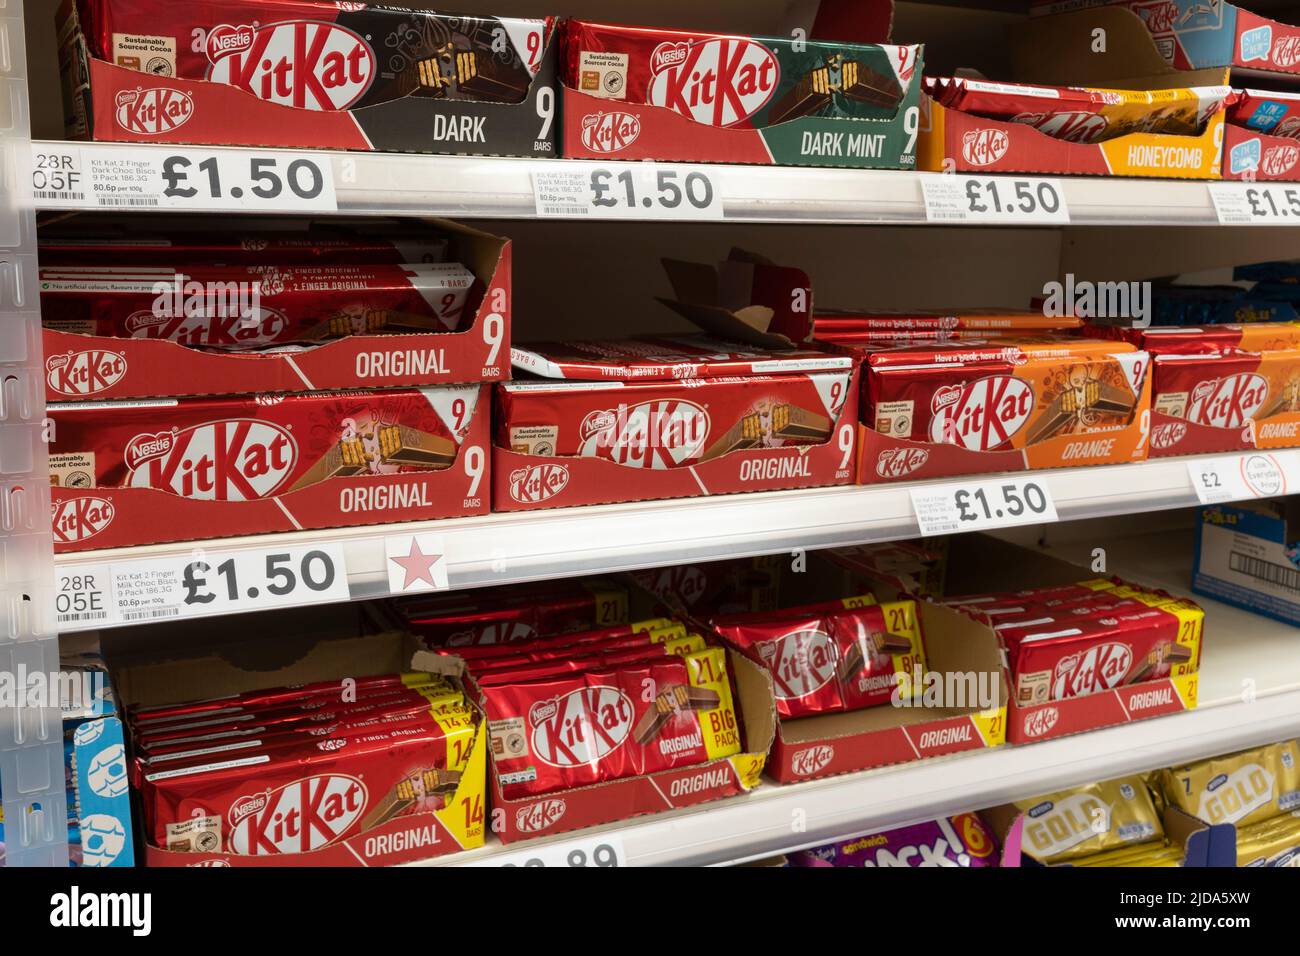 Multipack KitKat Schokoriegel auf einem britischen Supermarkt (Tesco) Regale. Thema: Ungesunde Lebensmittel, Snacks, Adipositas-Krise, ungesunde Lebensweise, Diabetes Stockfoto